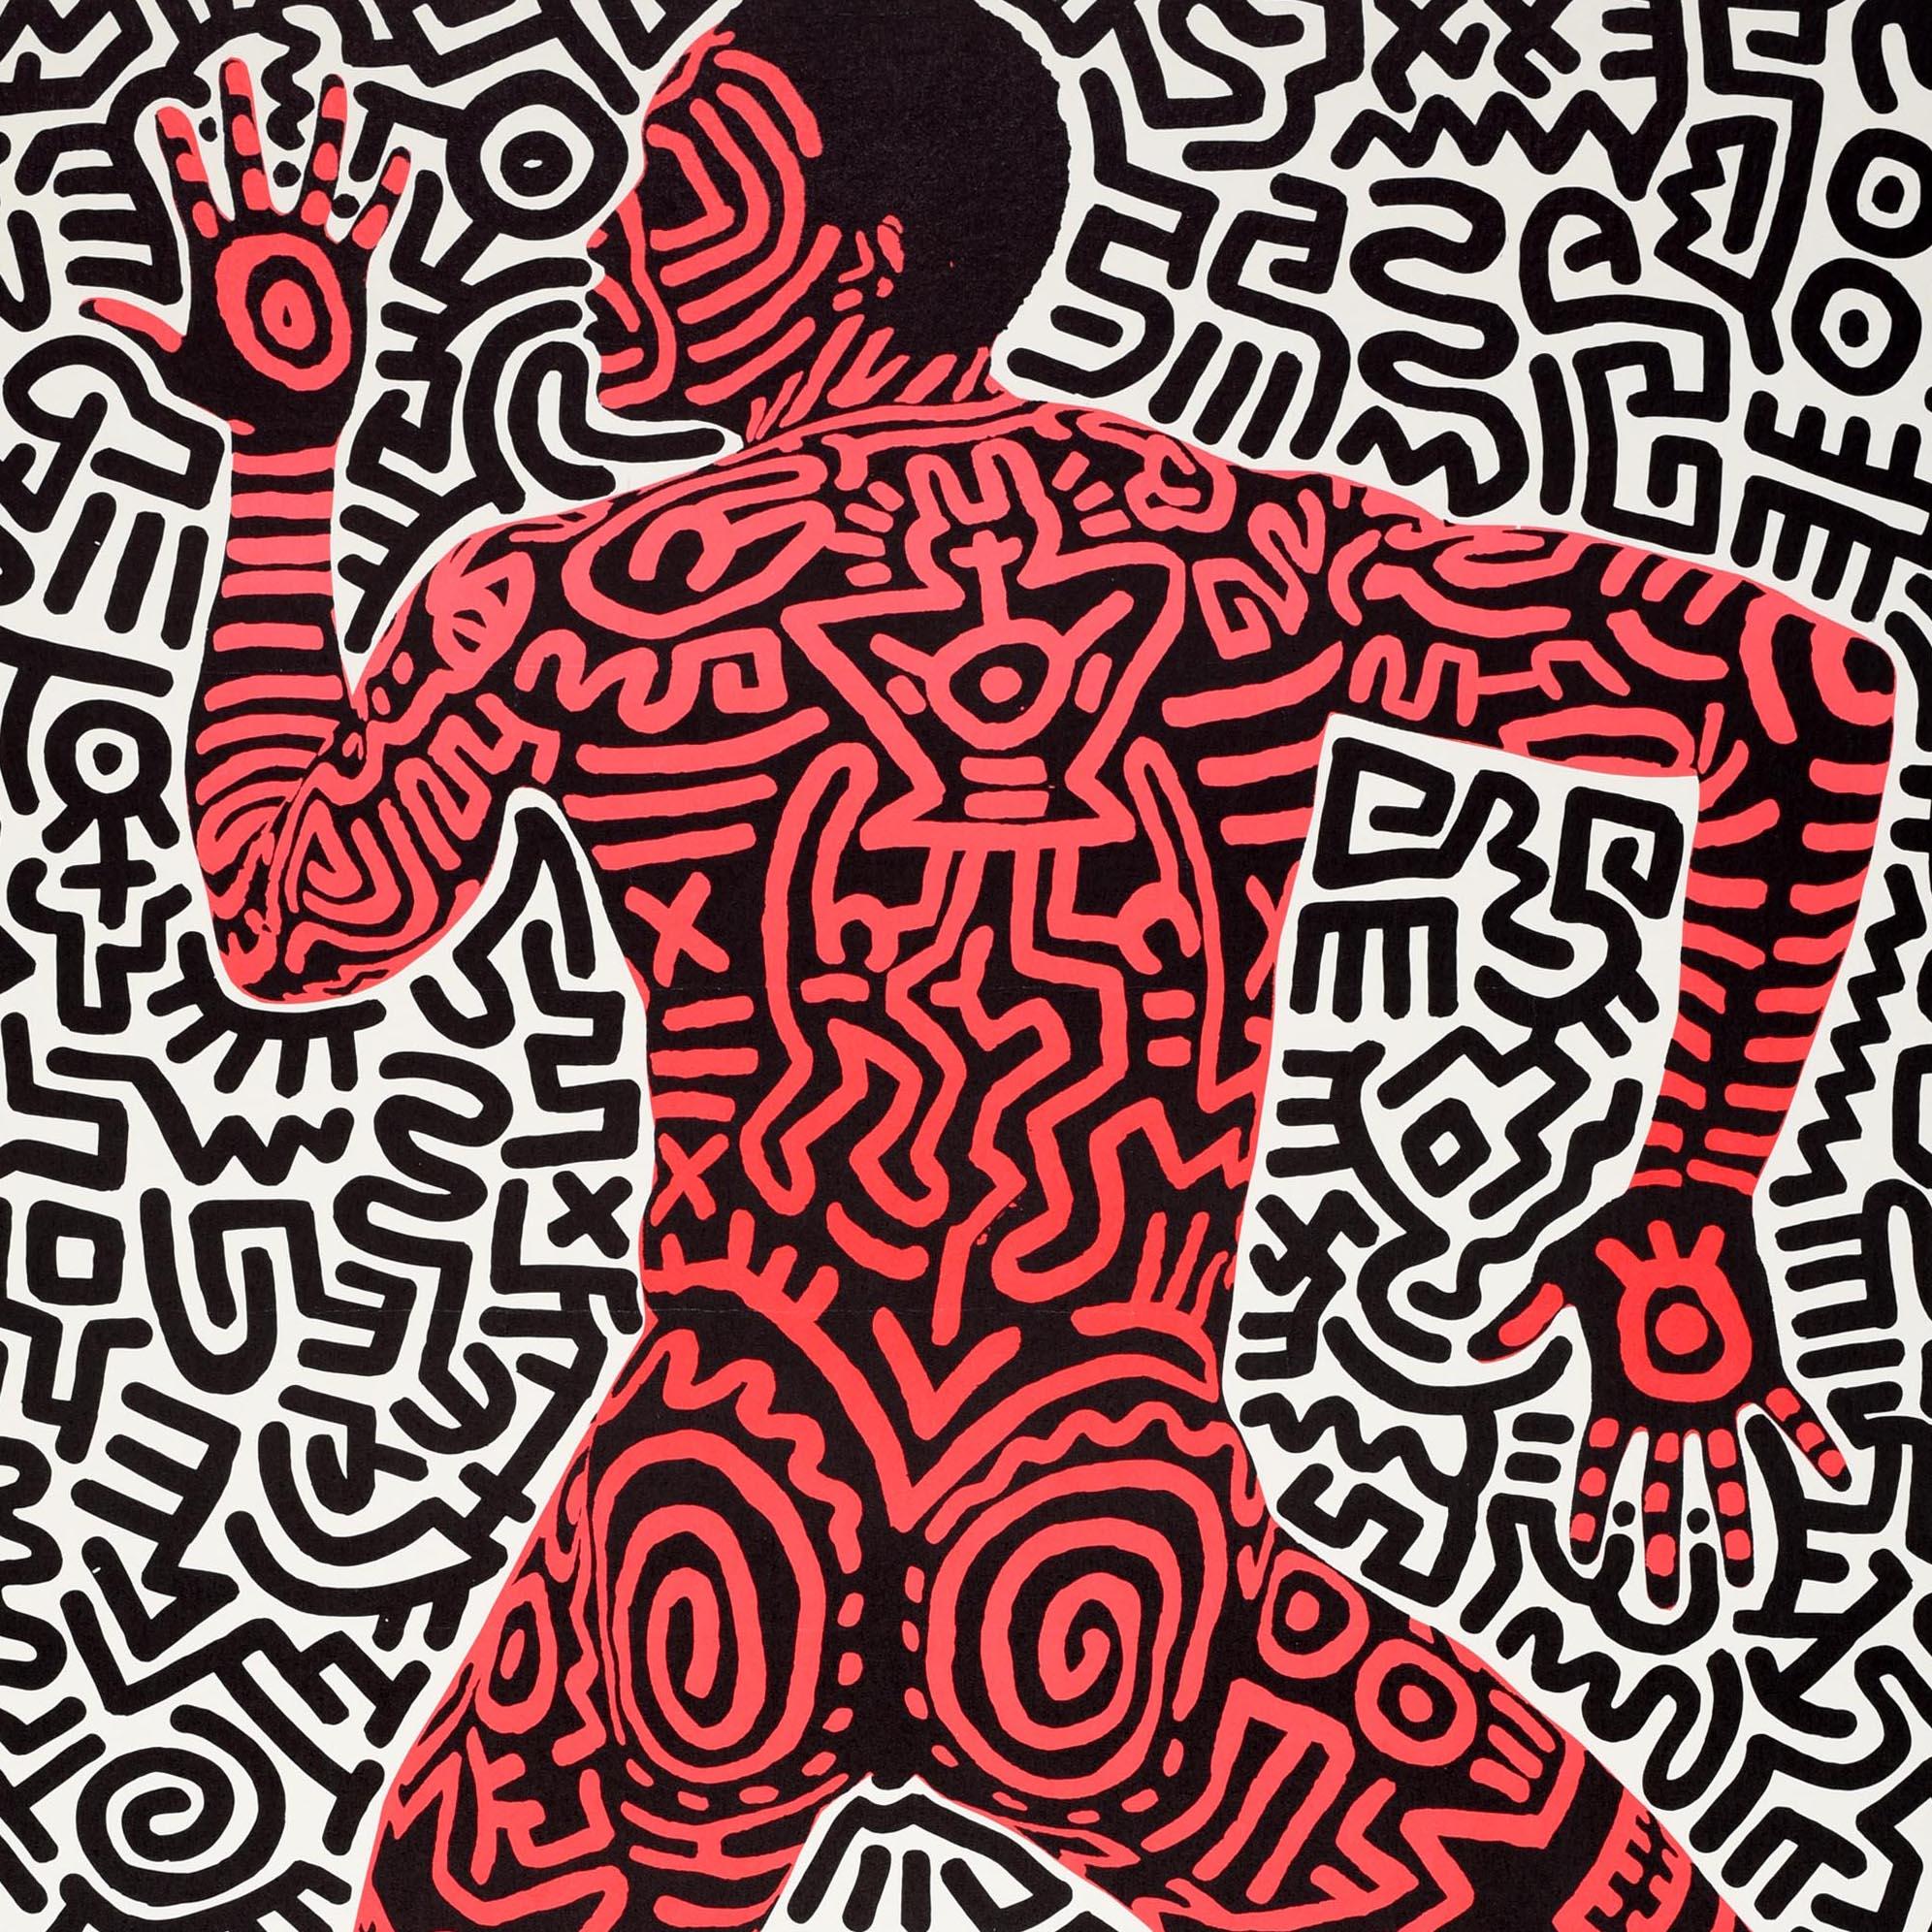 Original-Werbeplakat für eine Keith-Haring-Ausstellung - Into 84 - in der Tony Shafrazi Gallery in New York City vom 3. Dezember bis 7. Januar. Großartiges Design des amerikanischen Künstlers und sozialen Aktivisten Keith Haring (1958-1990) mit der